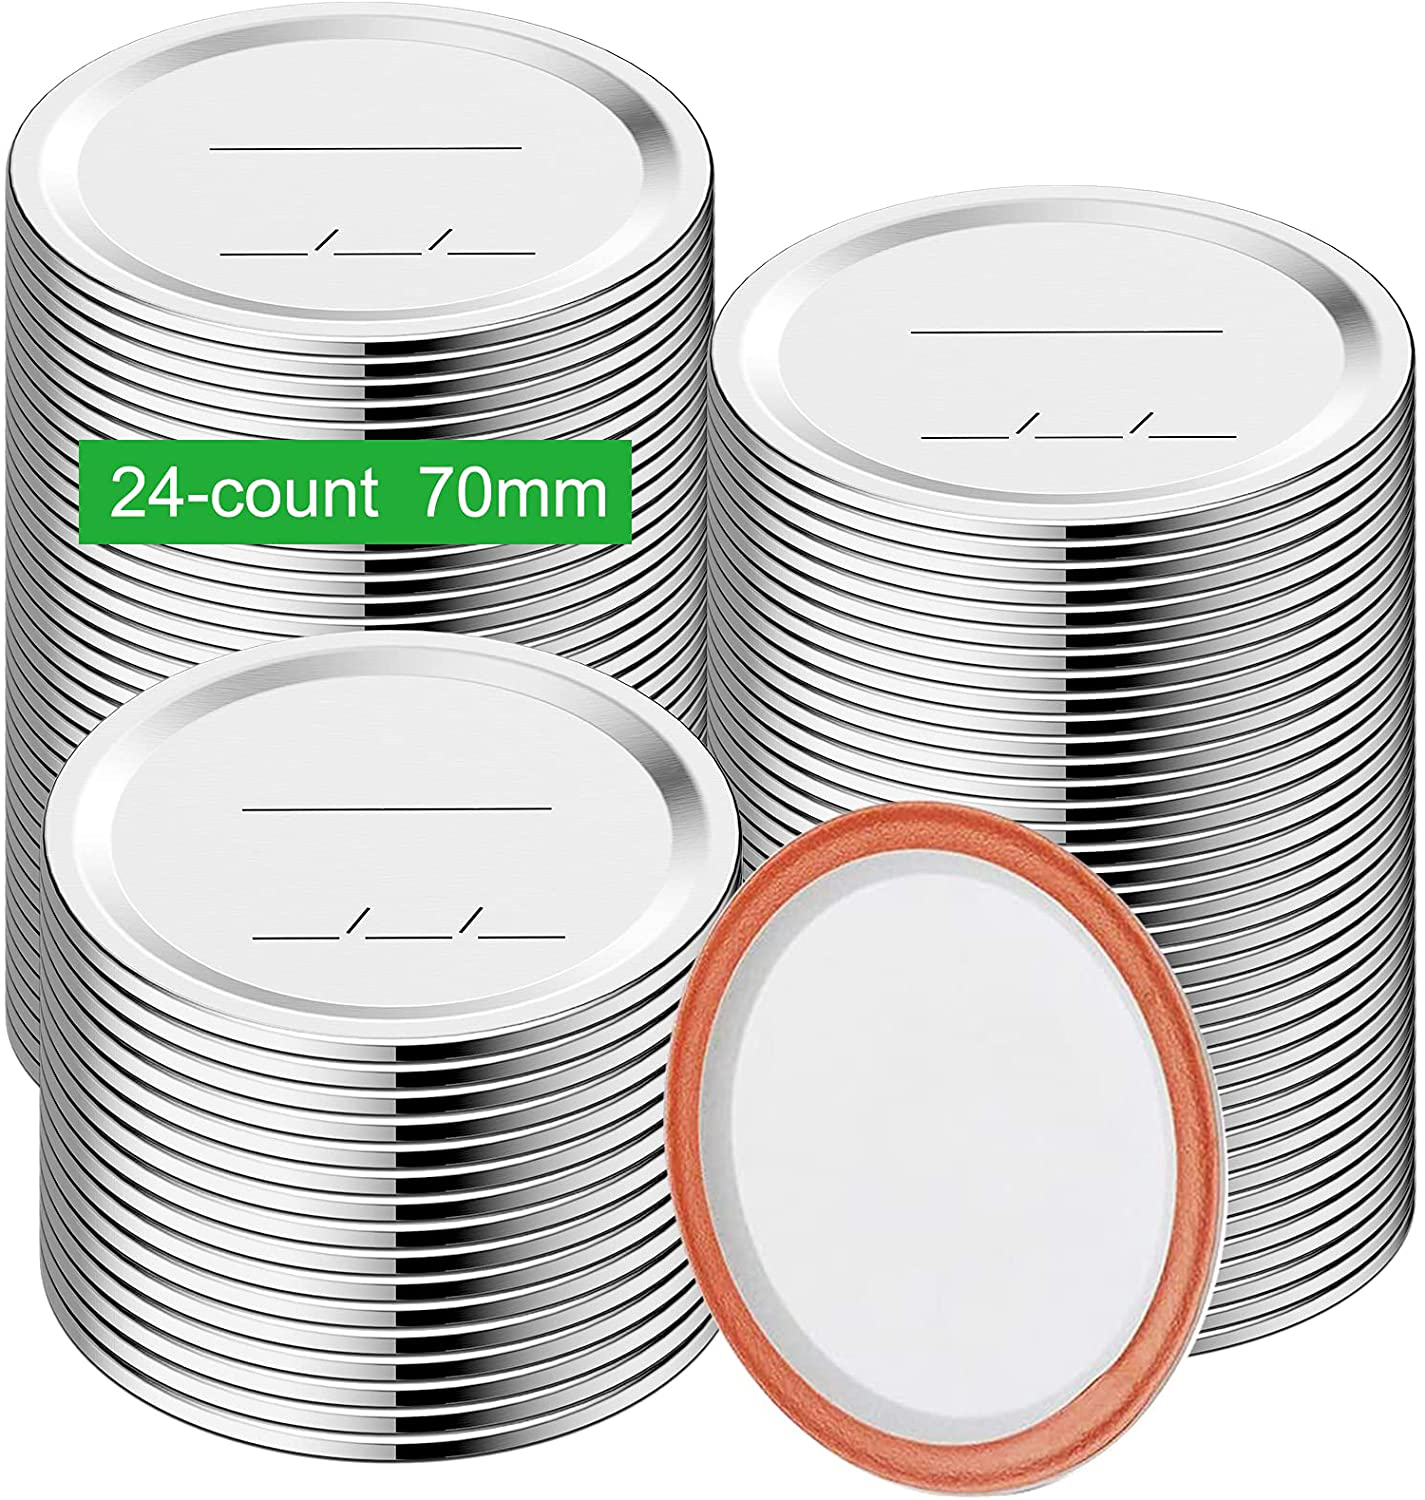 Regular Mouth Canning Lids, Enouvos 48-Count Canning Lids, Split-Type Lids for Mason Jar Regular Canning Lids Bulk,100% Fit and Airtight for Regular Mouth Jars (70mm Regular Mouth(48 Lids))